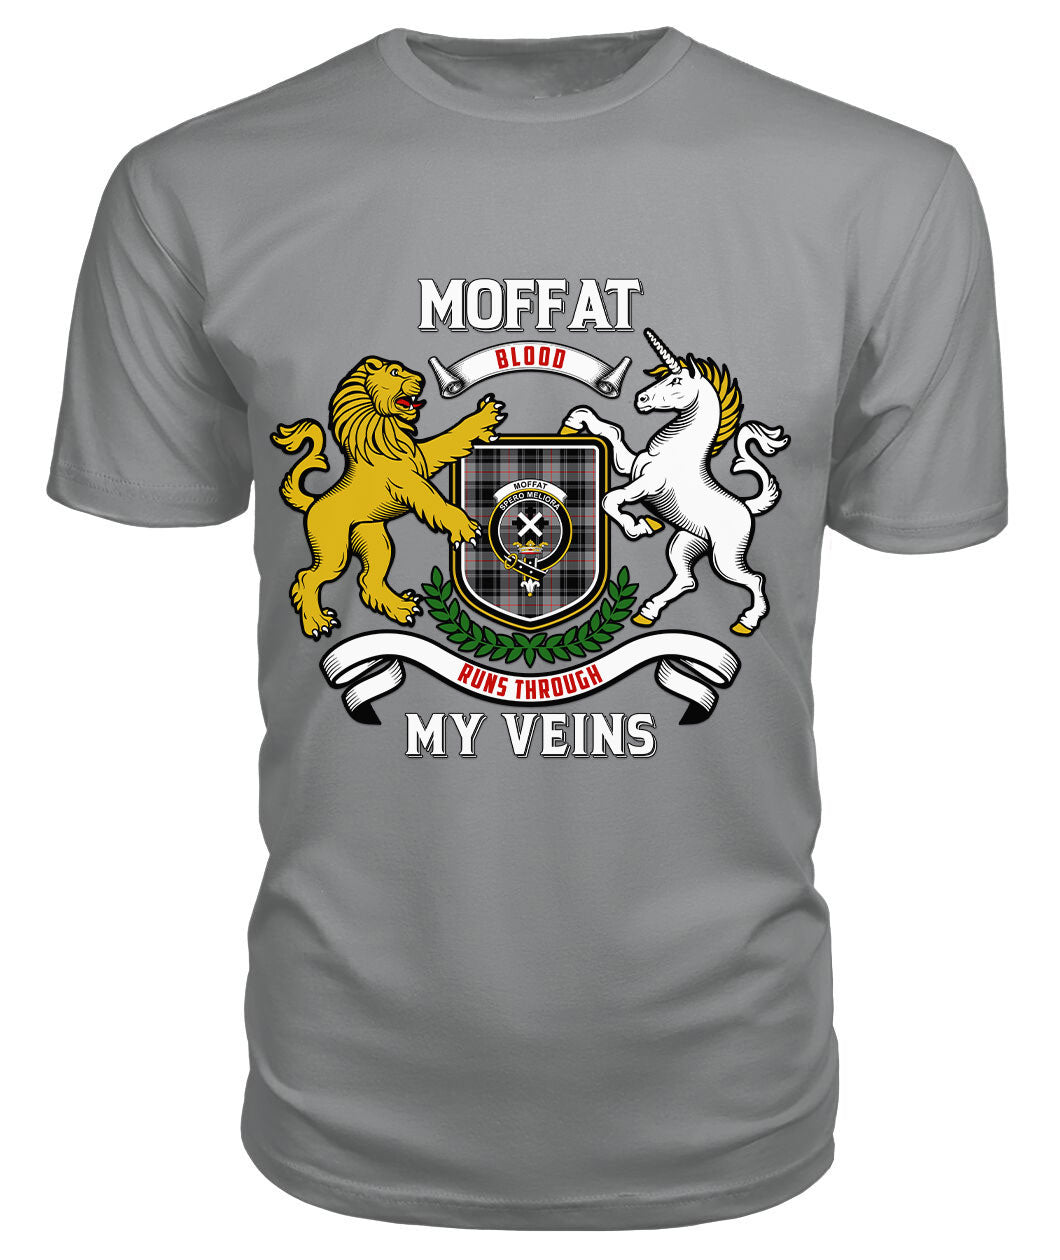 Moffat Modern Tartan Crest 2D T-shirt - Blood Runs Through My Veins Style